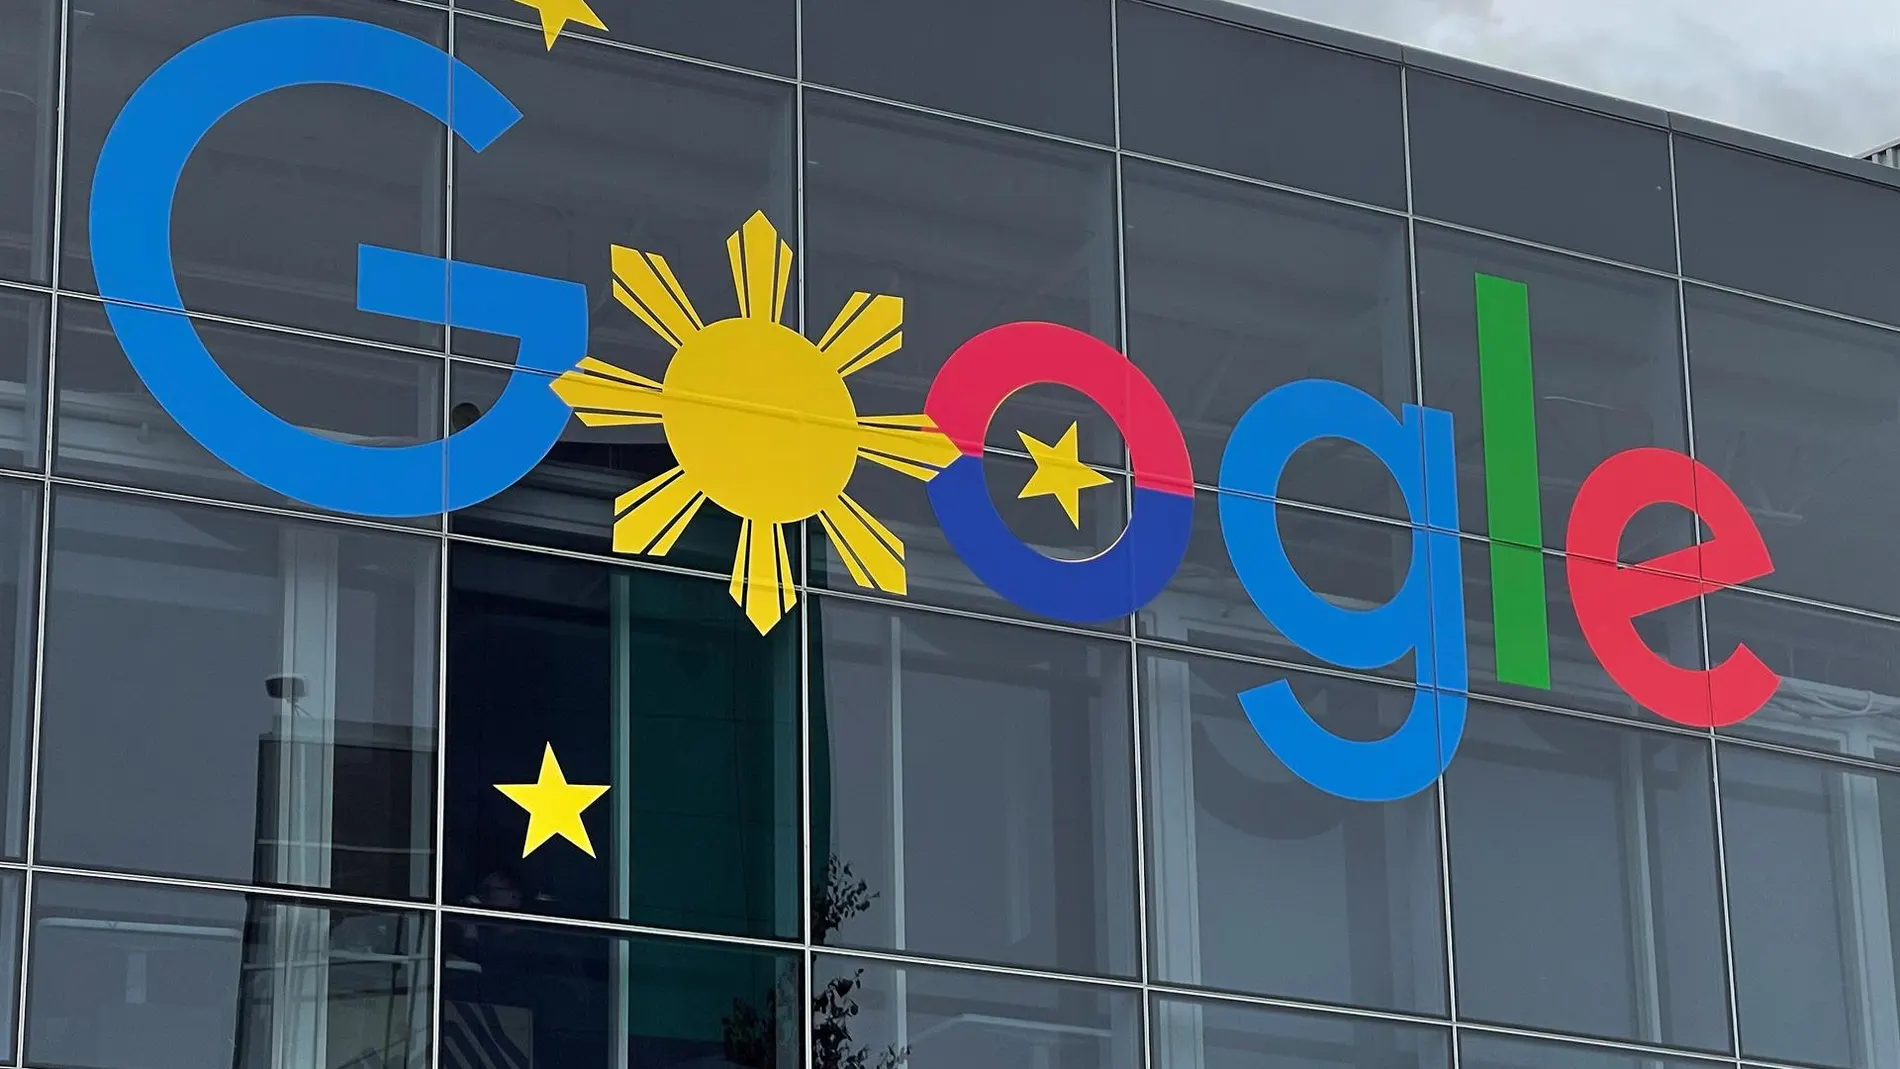 Fotografía de archivo que muestra la fachada de la sede de Google, conocida como Googleplex, en Mountain View, California (EE.UU).